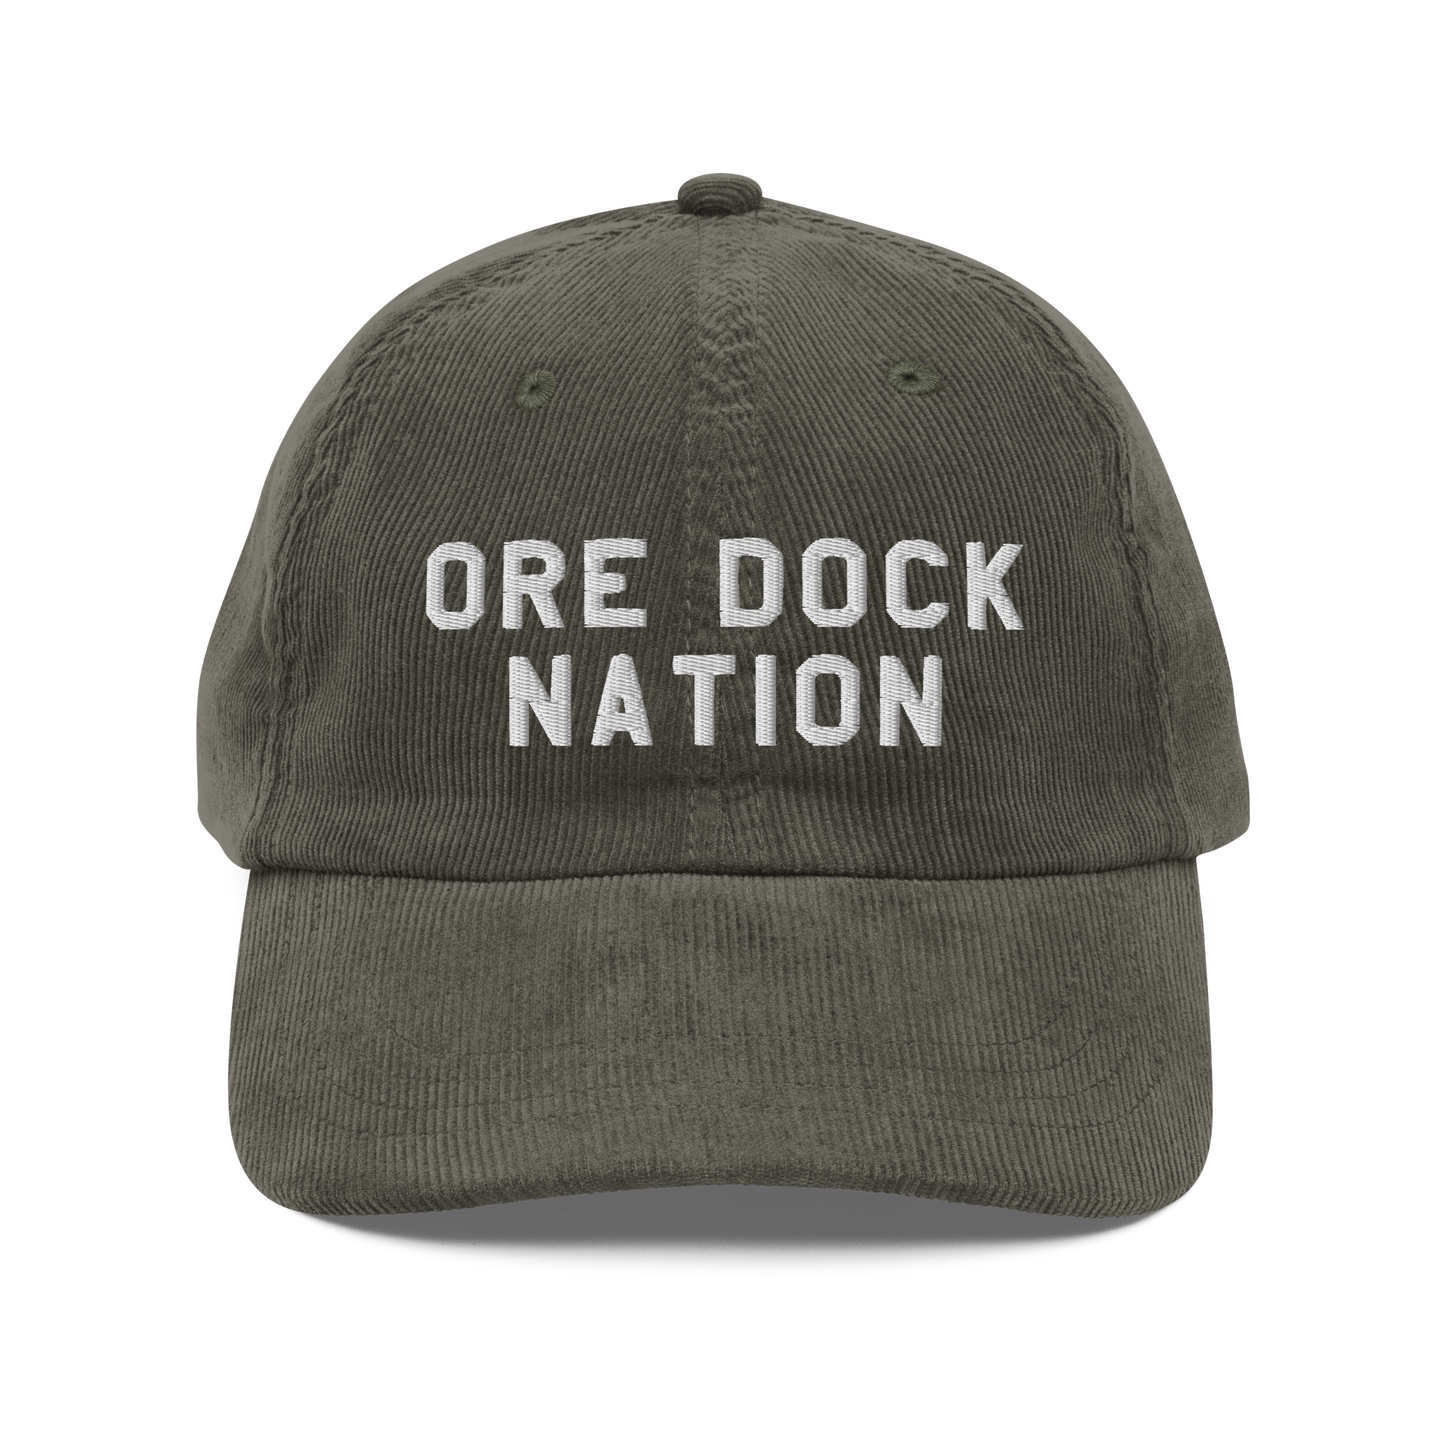 Marquette 'Ore Dock Nation' Vintage Corduroy Cap